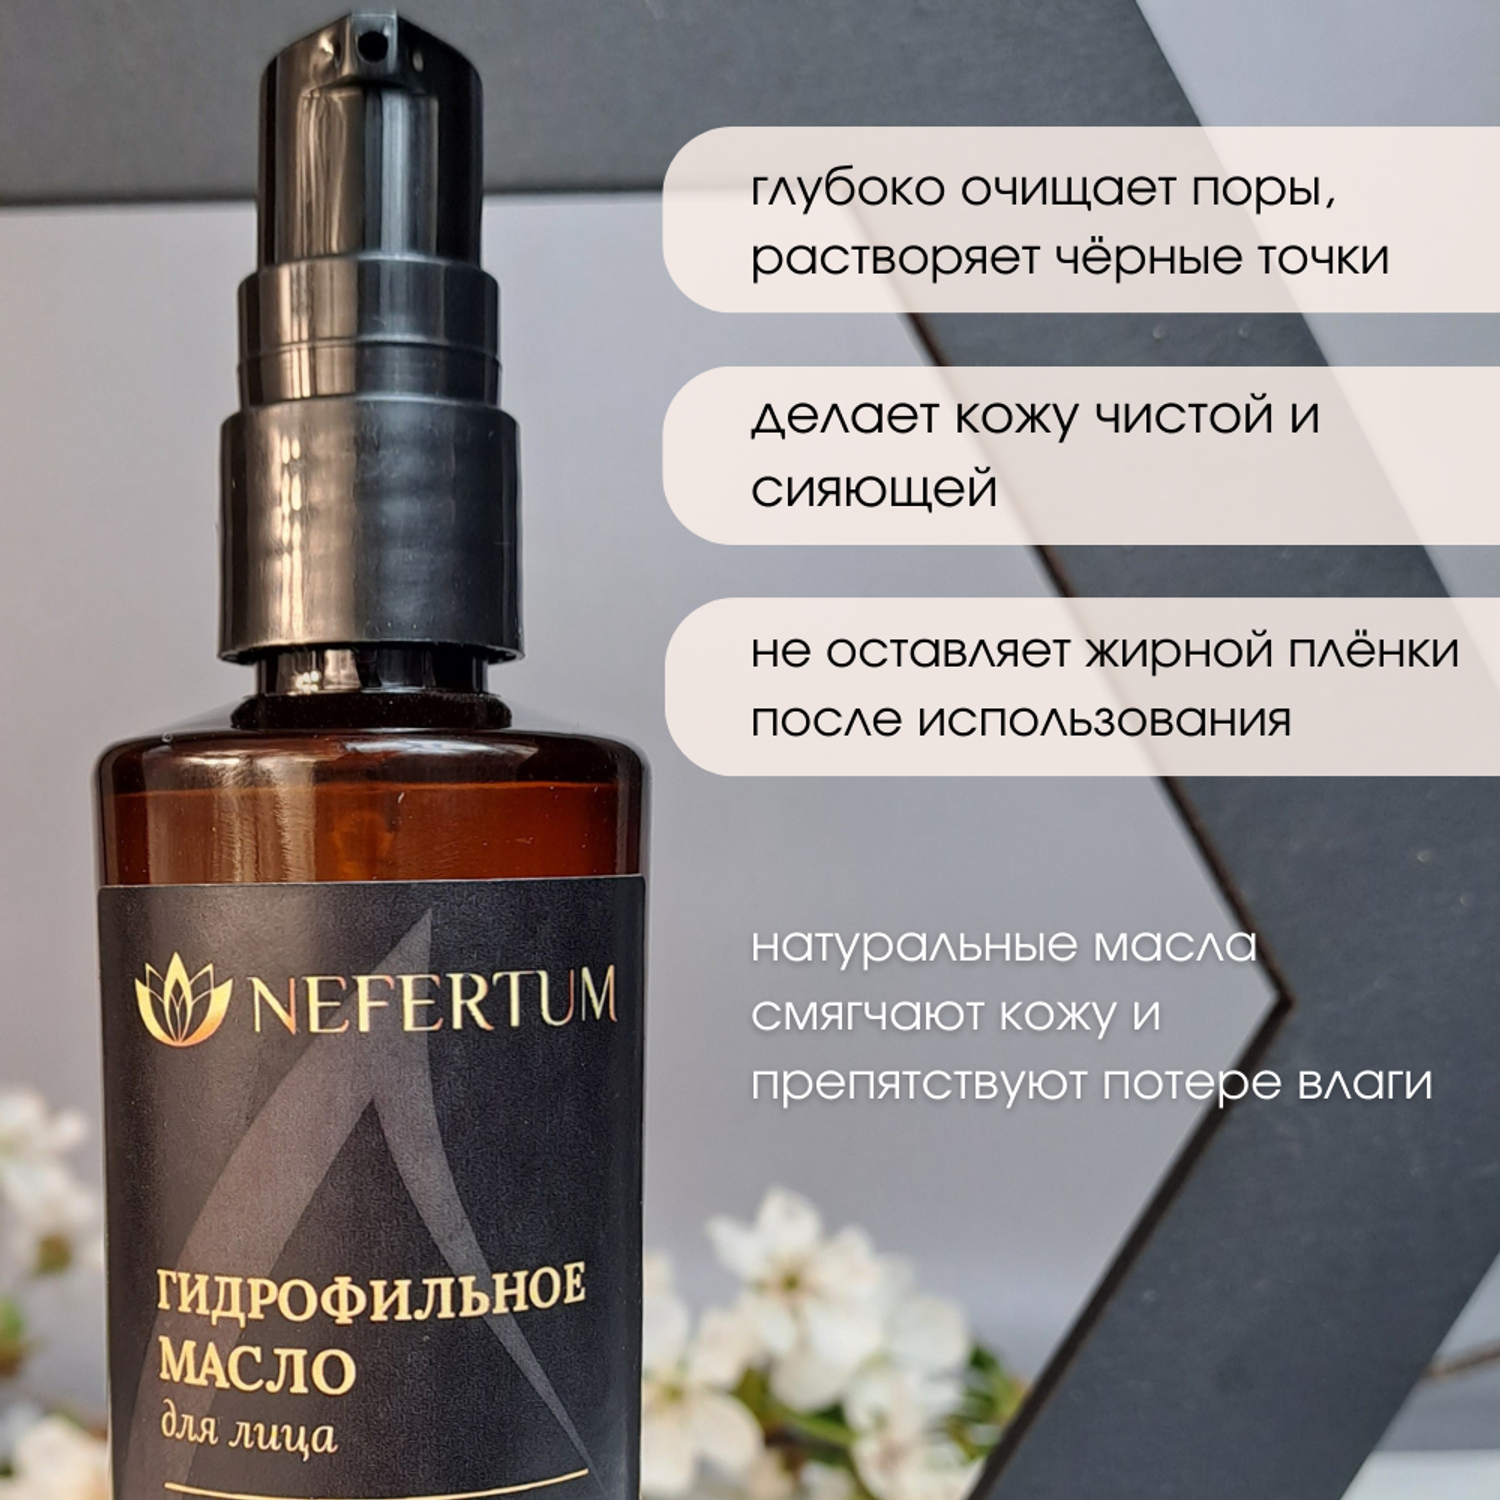 Гидрофильное масло nefertum для снятия макияжа без отдушки - фото 2